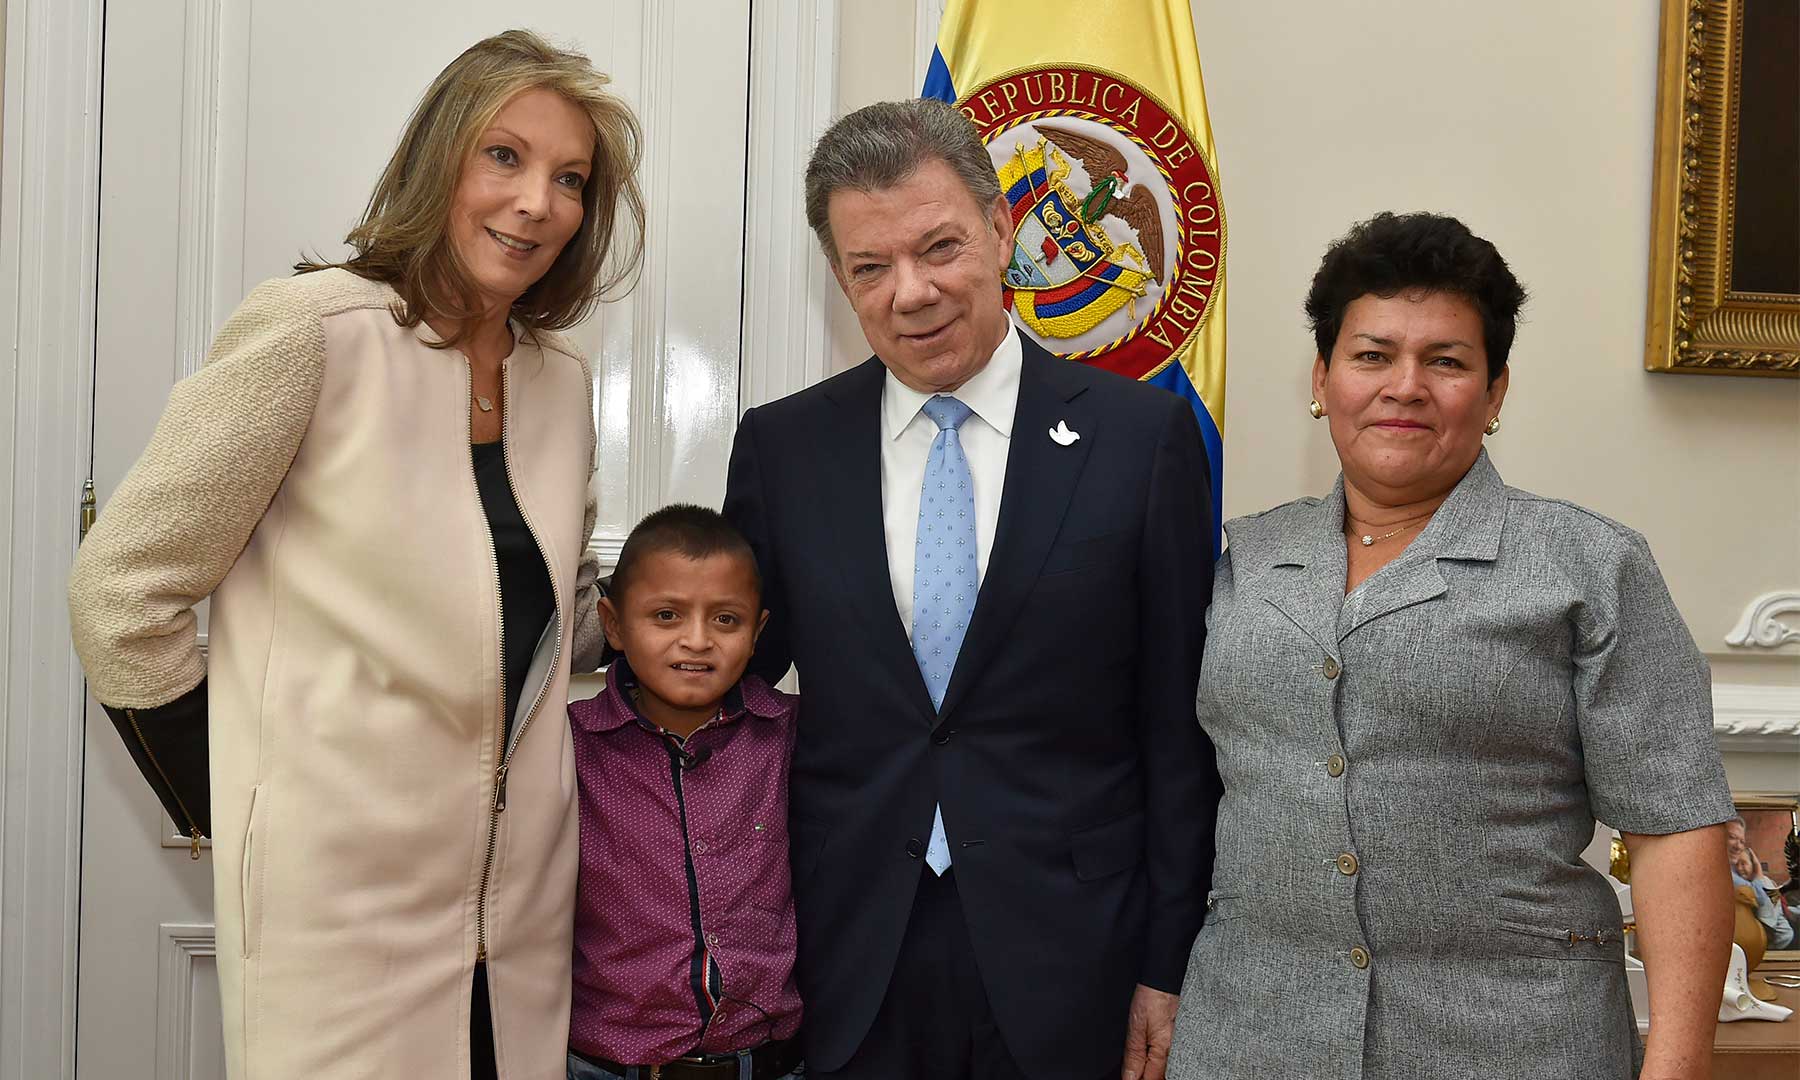 El pasado 23 de enero, Jair Palta intentó llegar hasta el Presidente Santos en una visita al Putumayo, pero no pudo. Hoy cumplió su anhelo de hablar con el Presidente, acompañado por su madre, Luz Doris, y por la esposa del Mandatario.